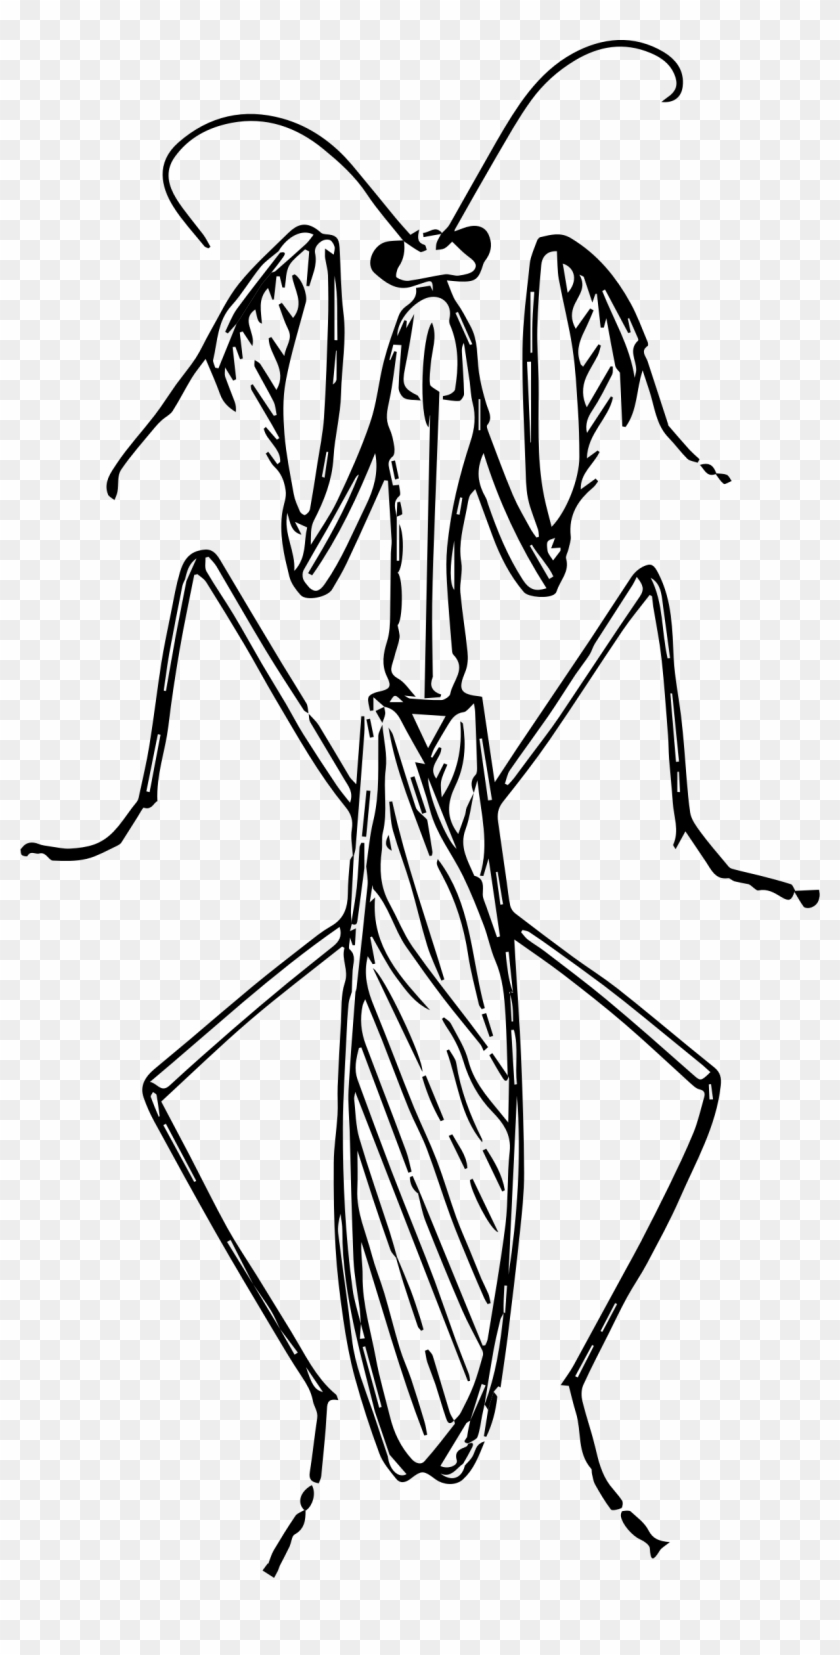 Banner Transparent Download Praying Mantis Big Image - Praying Mantis Black And White Clipart #1136799